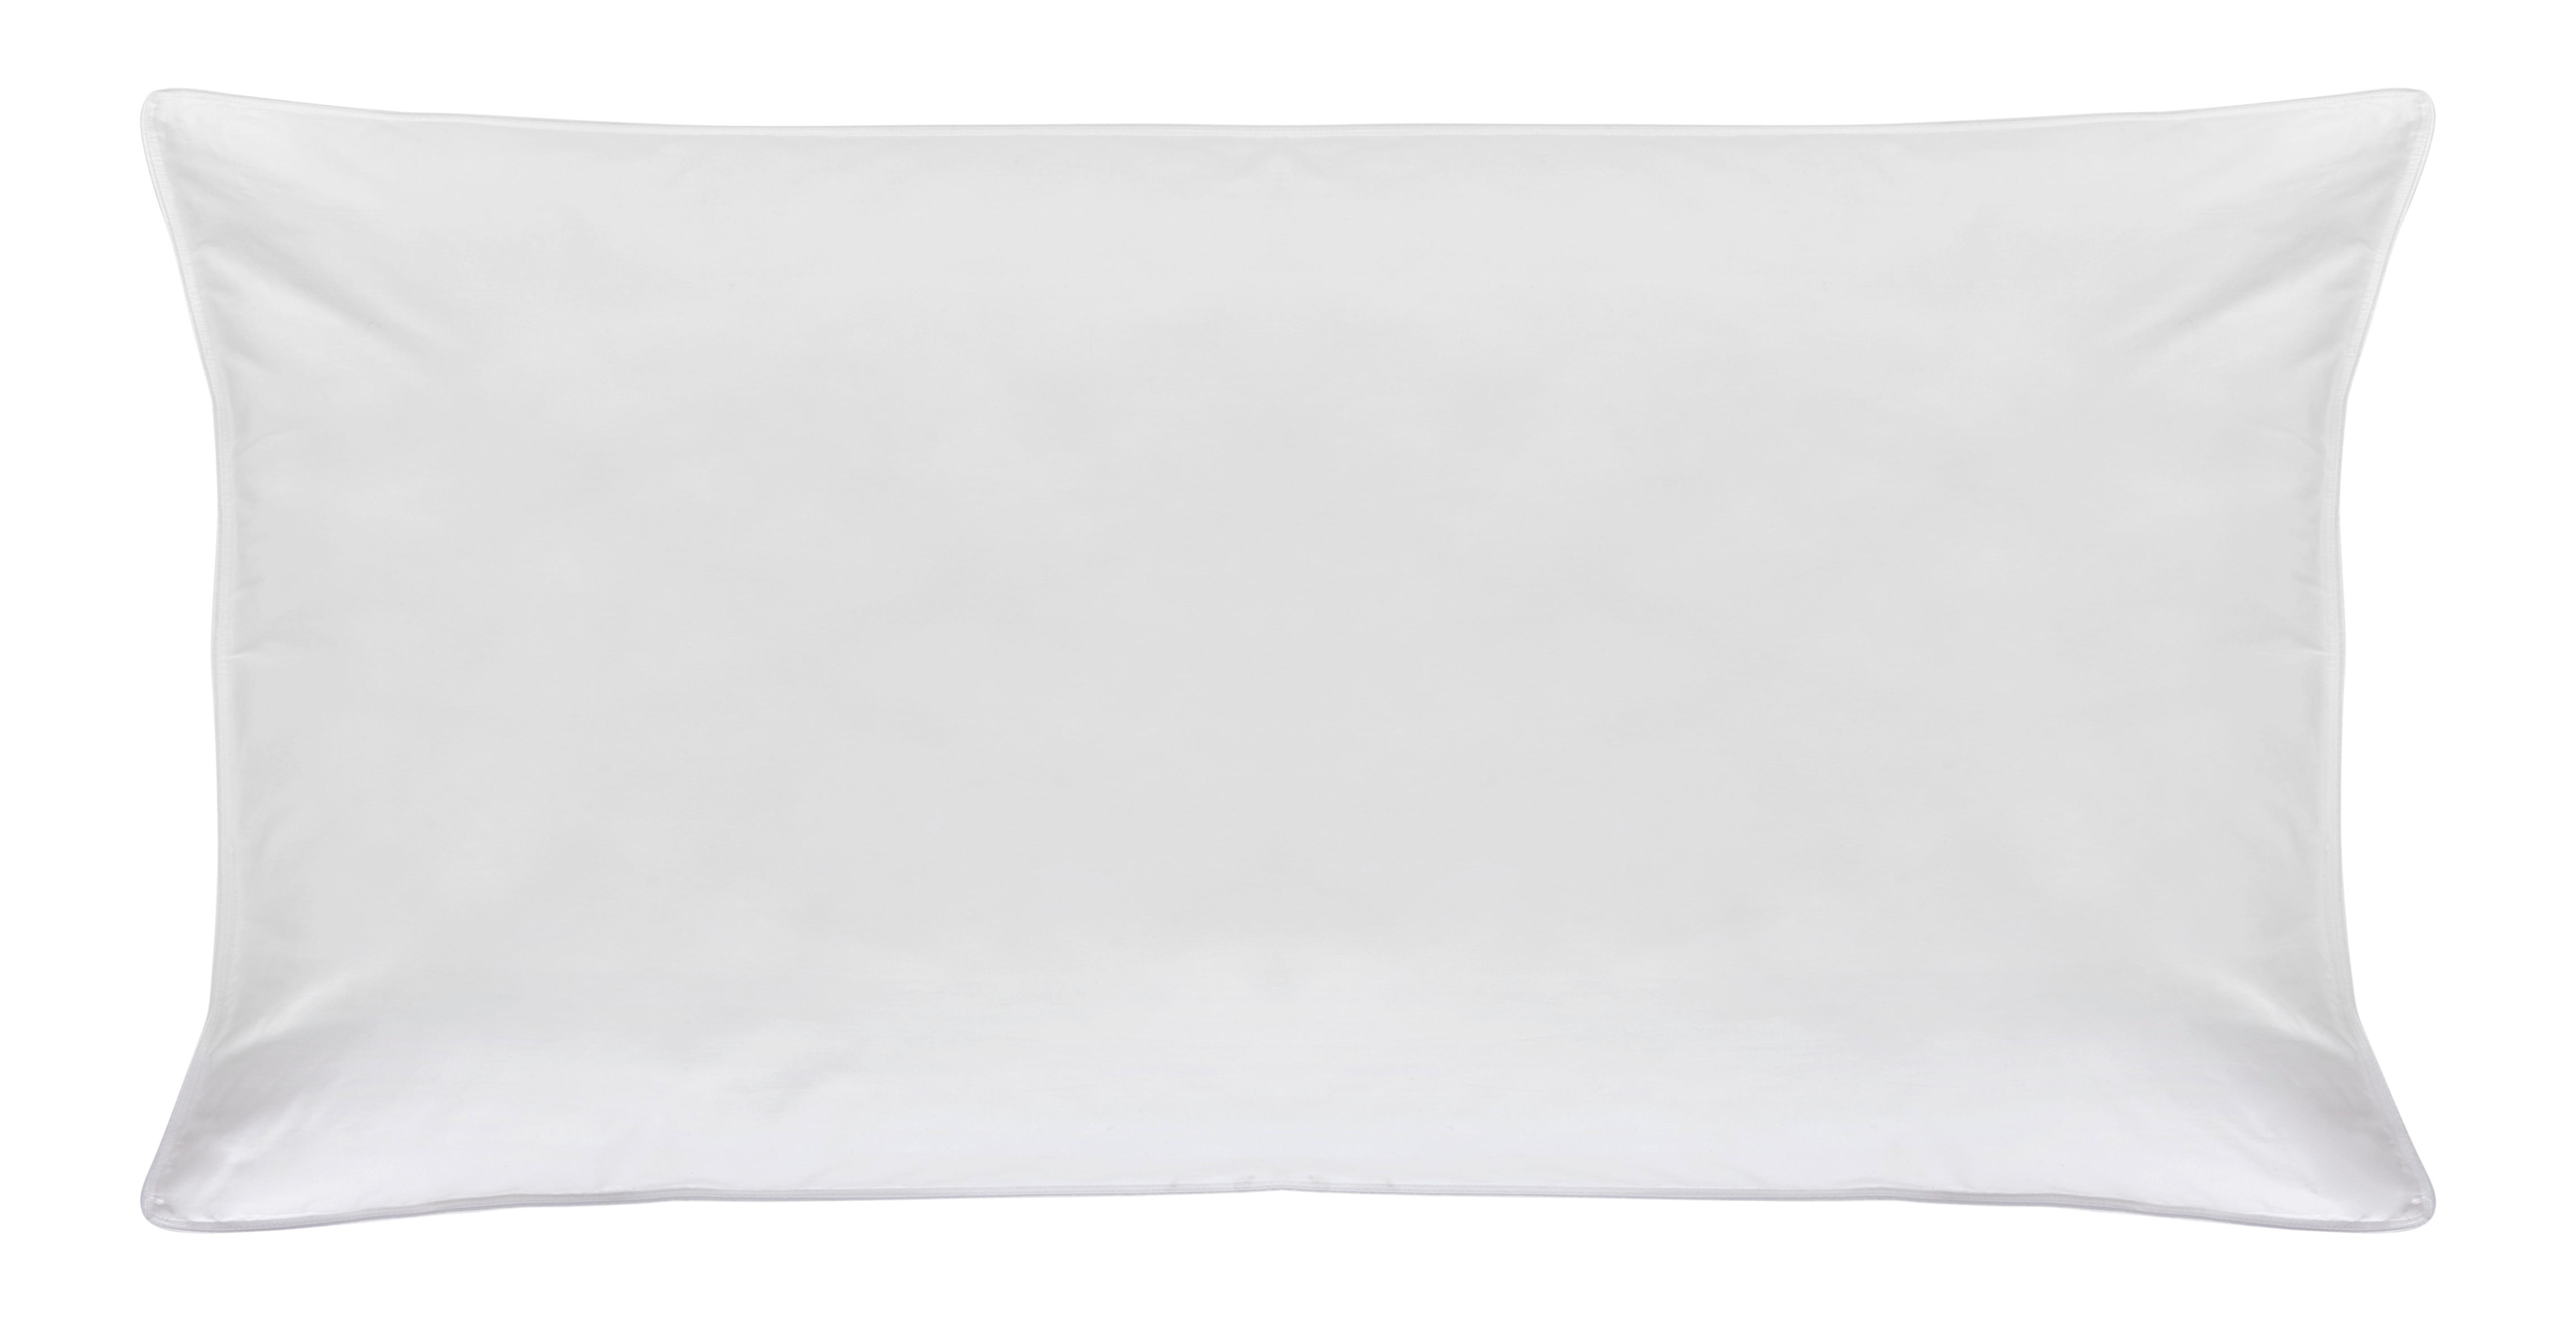 Polštář Pod Hlavu Vegandown, 40/80cm, Bílá - bílá, Konvenční, textil (40/80cm) - Premium Living